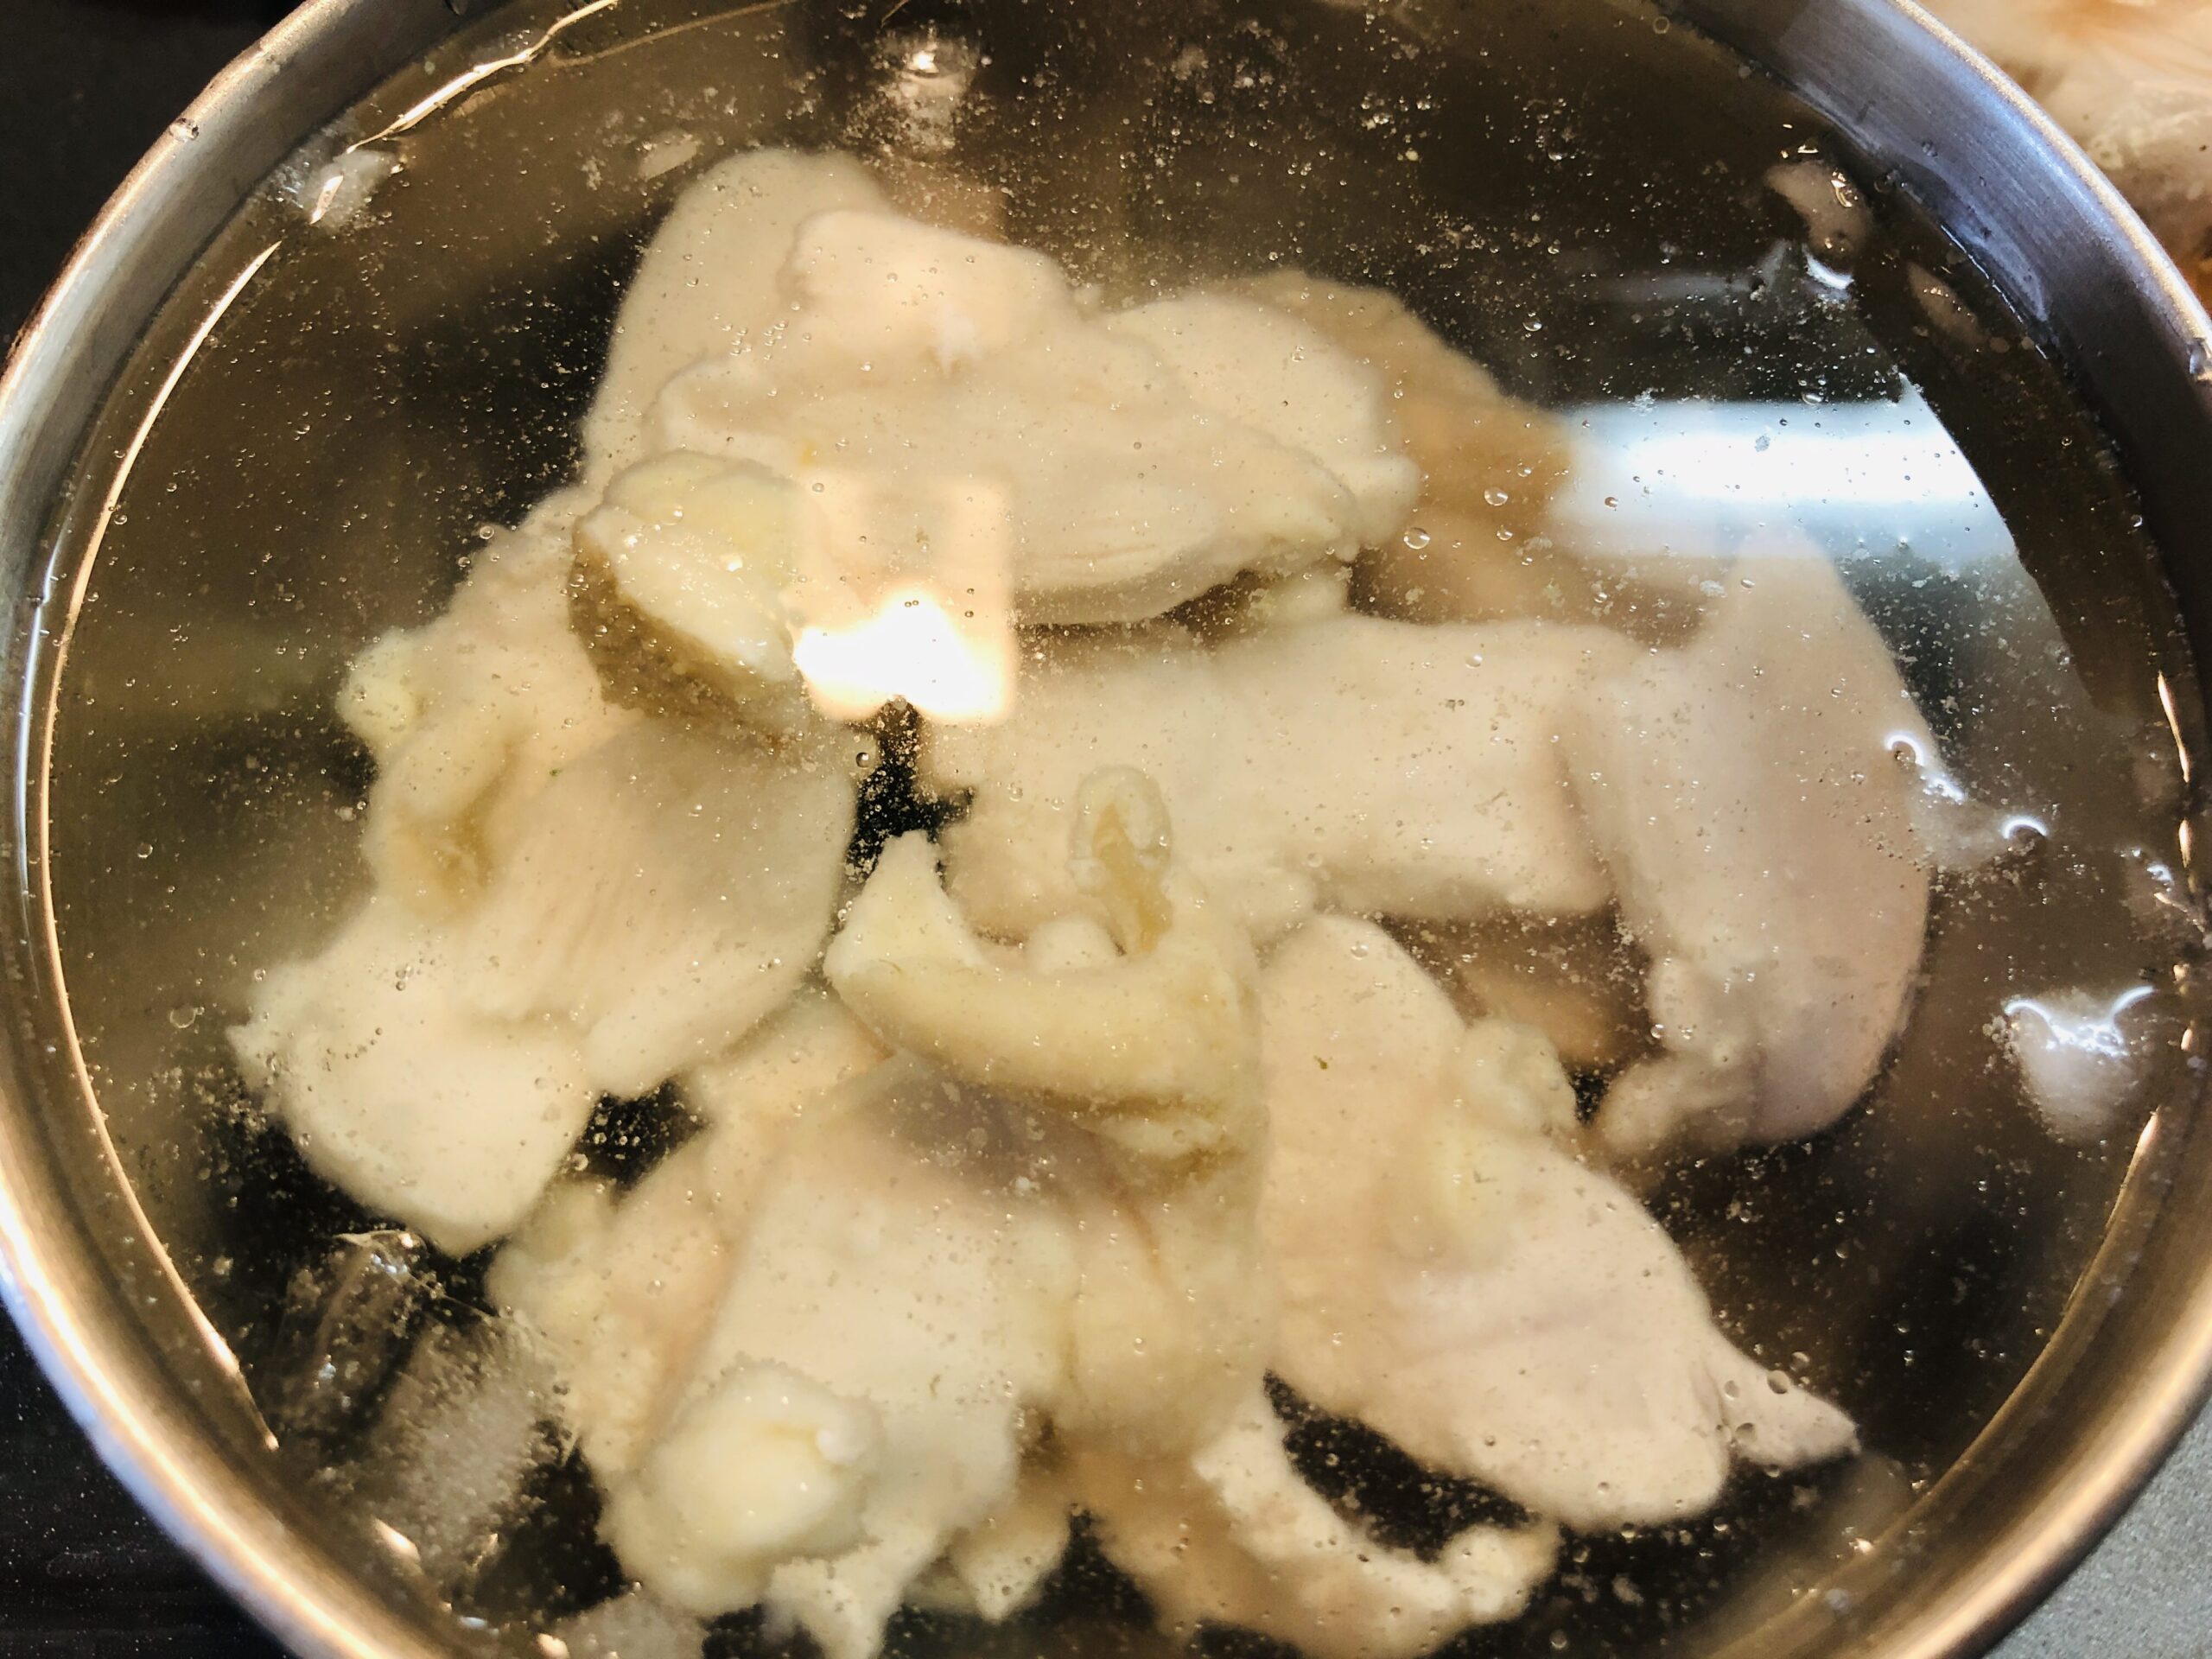 塩ゆでした鶏むね肉を氷水で冷やしている状態の画像です